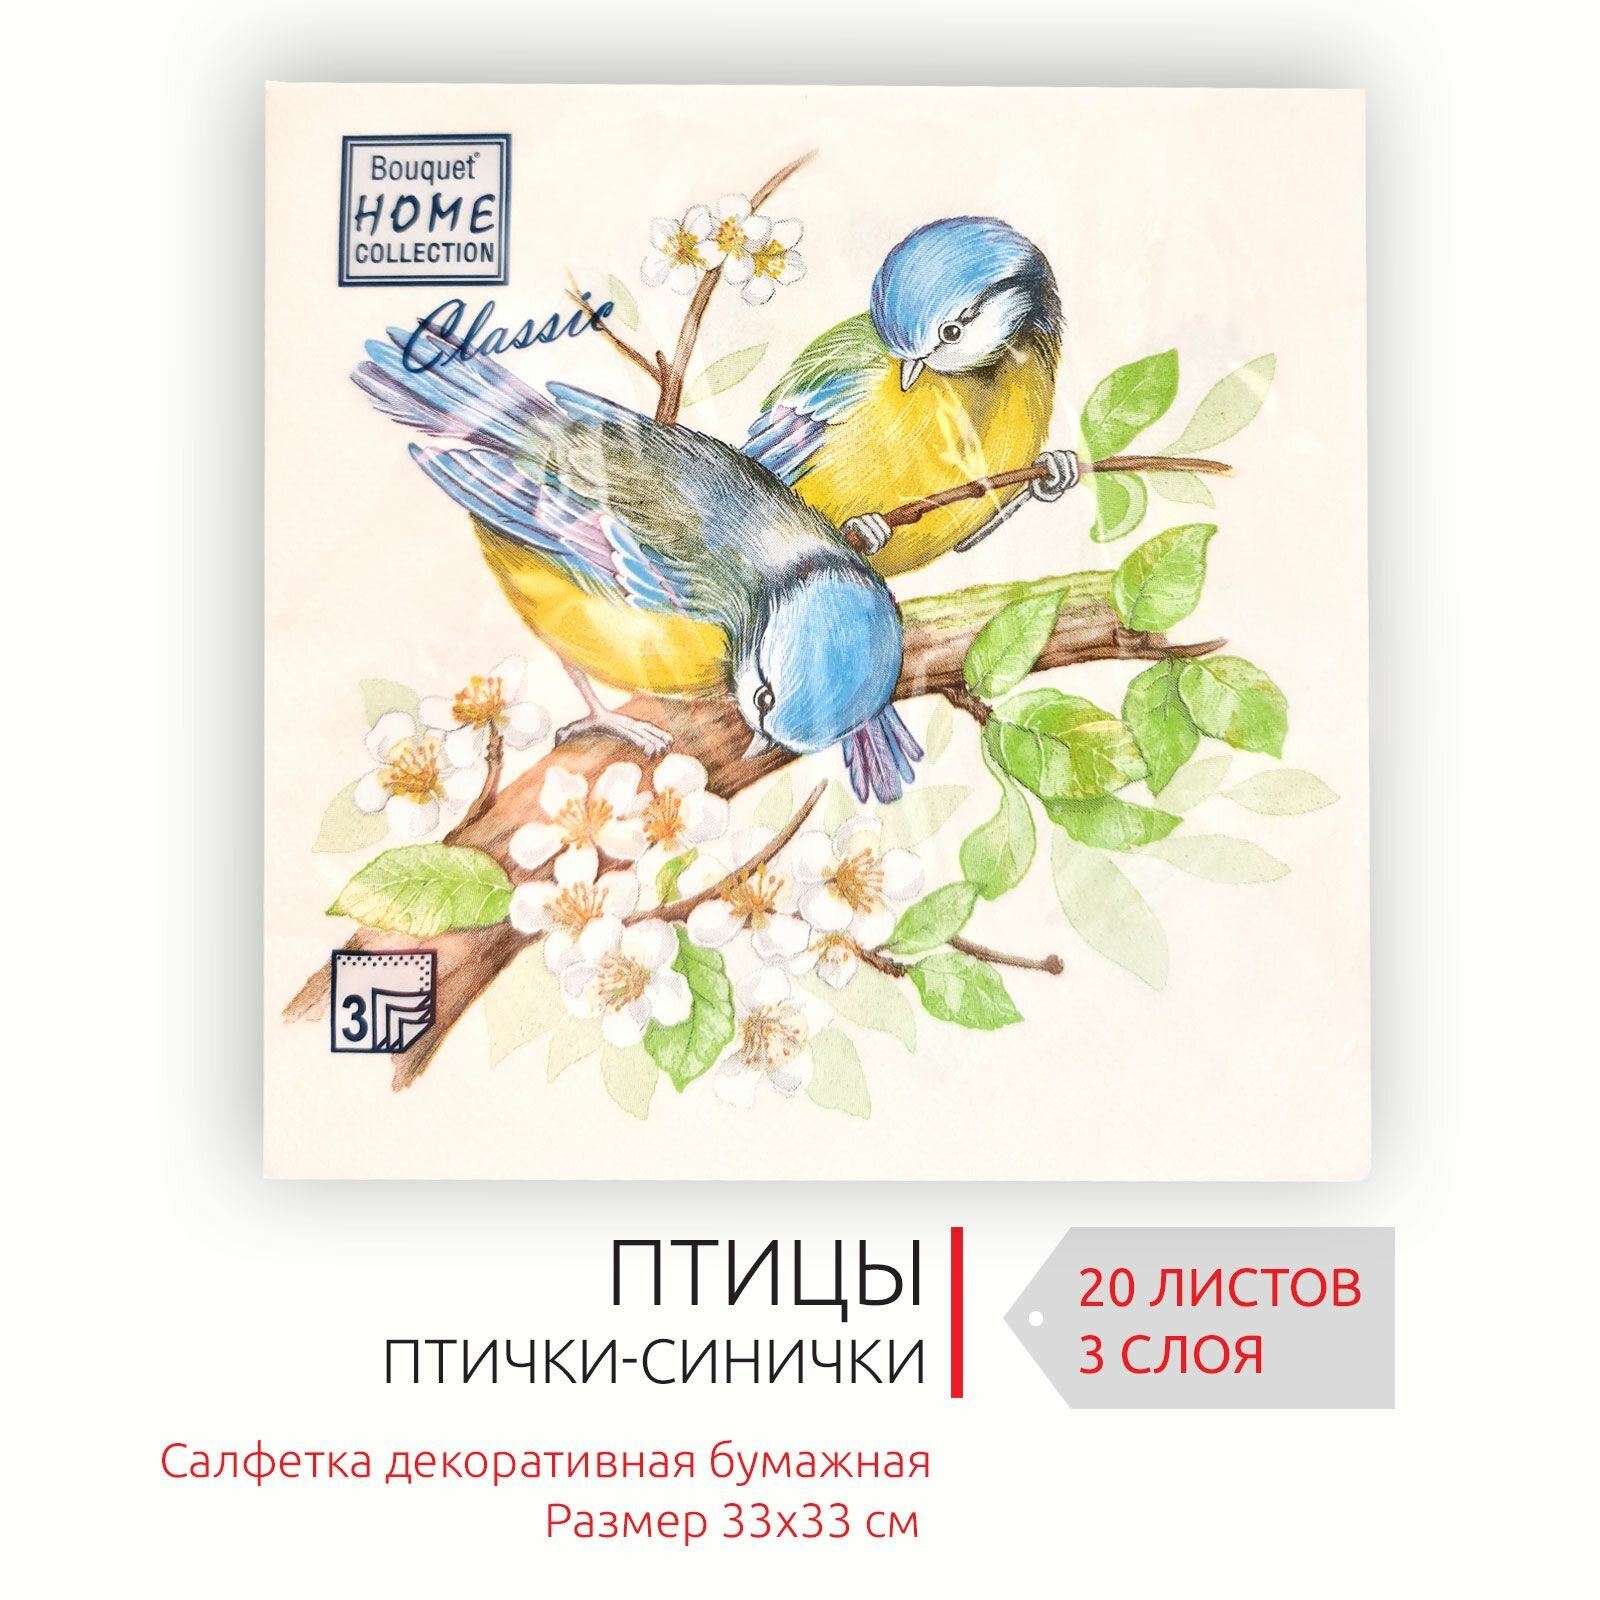 Декоративные праздничные бумажные салфетки Птички-Синички, 33х33 см, 3 слоя, 20 листов